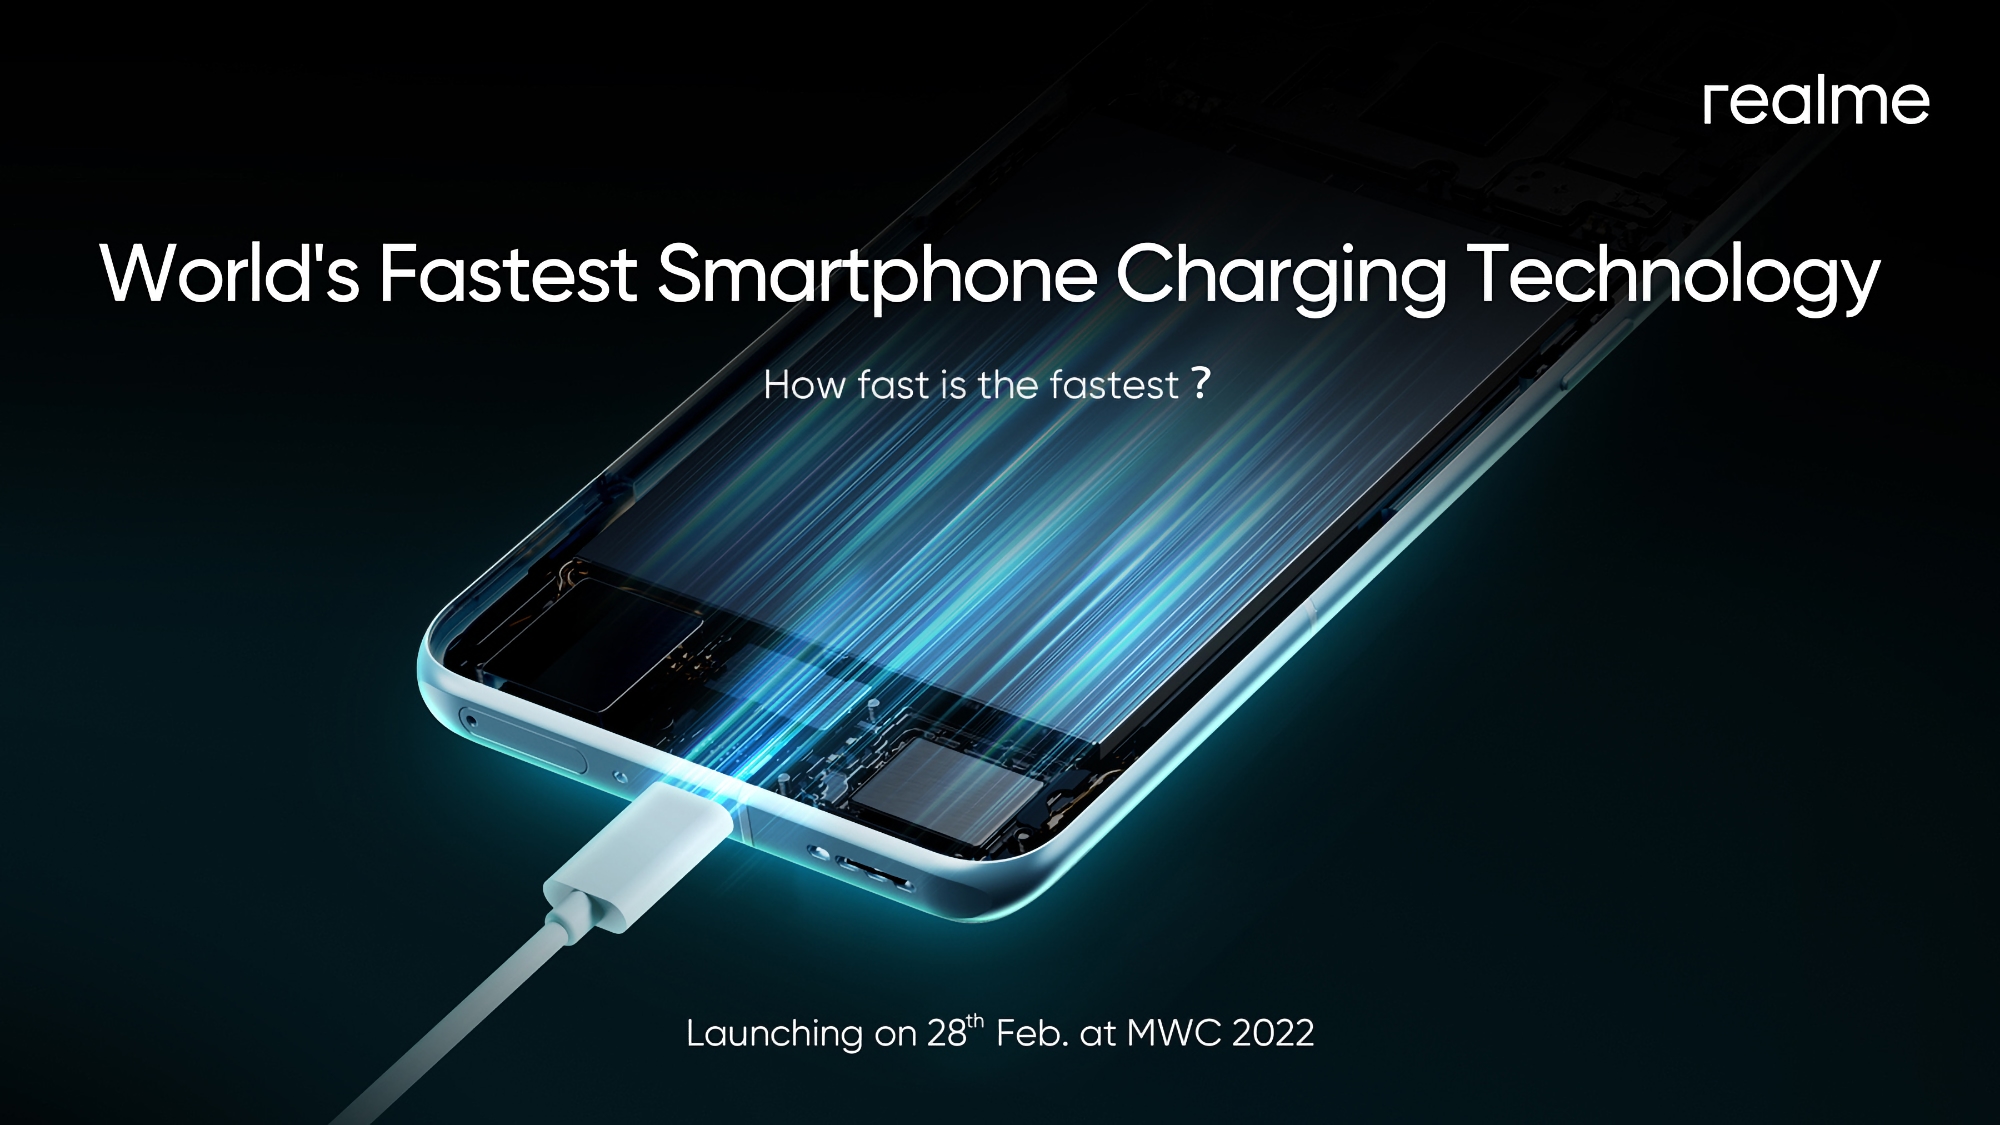 realme presentará la "tecnología de carga de teléfonos inteligentes más rápida del mundo" el 28 de febrero